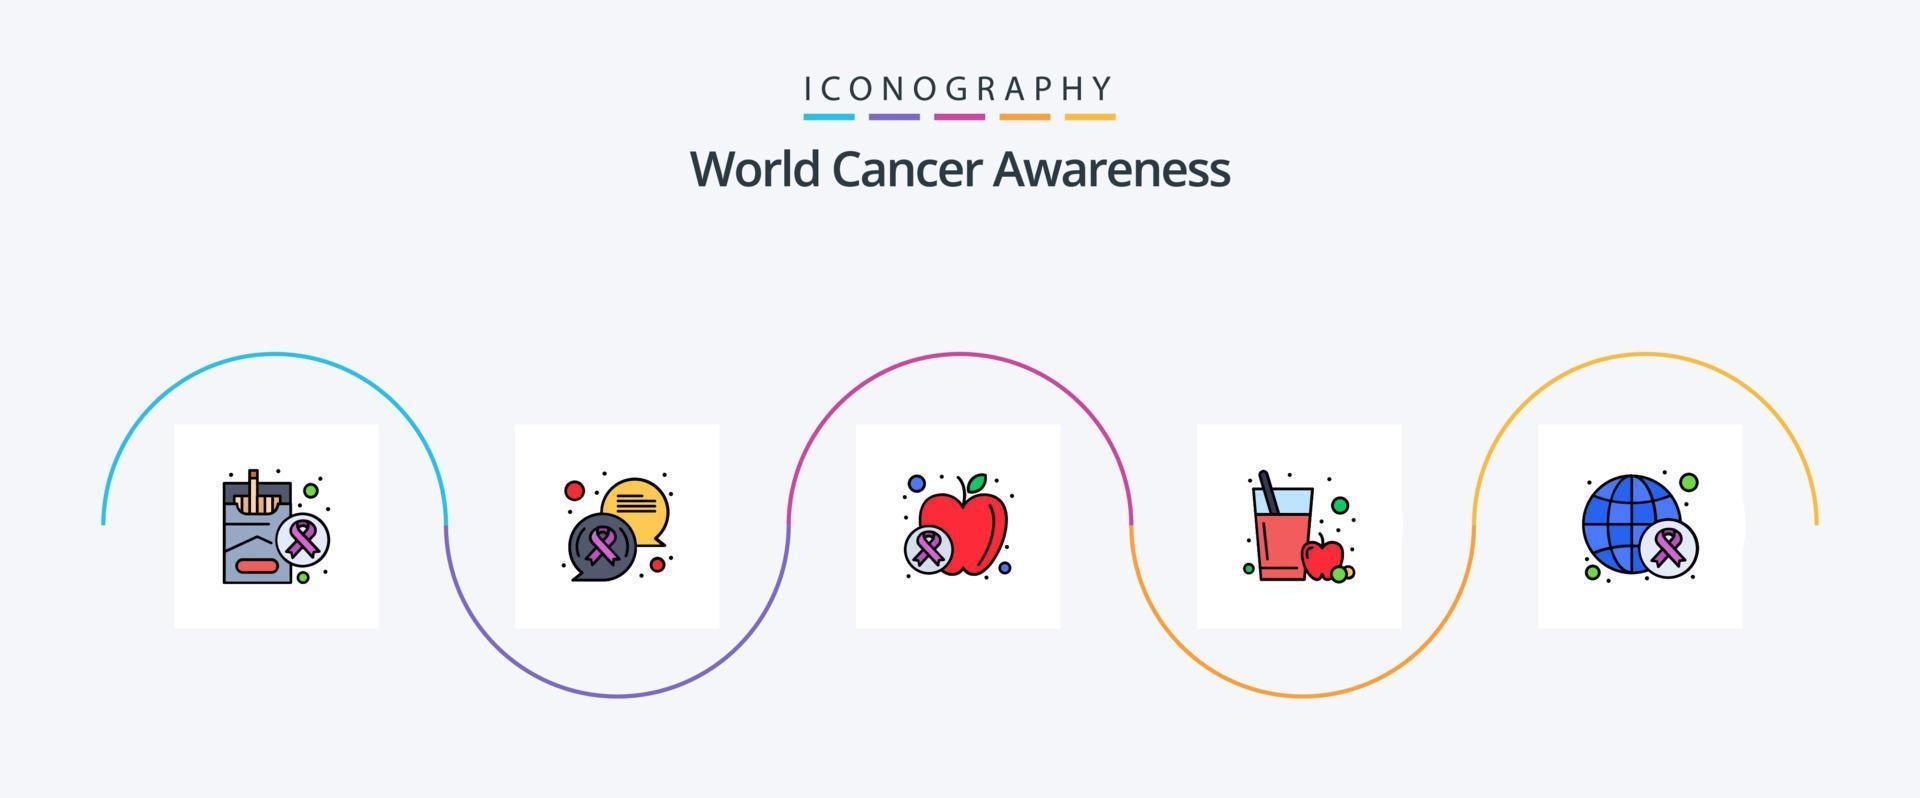 la línea mundial de concientización sobre el cáncer llenó el paquete de iconos planos 5, incluido el día. conciencia. manzana. vidrio. jugo de manzana vector